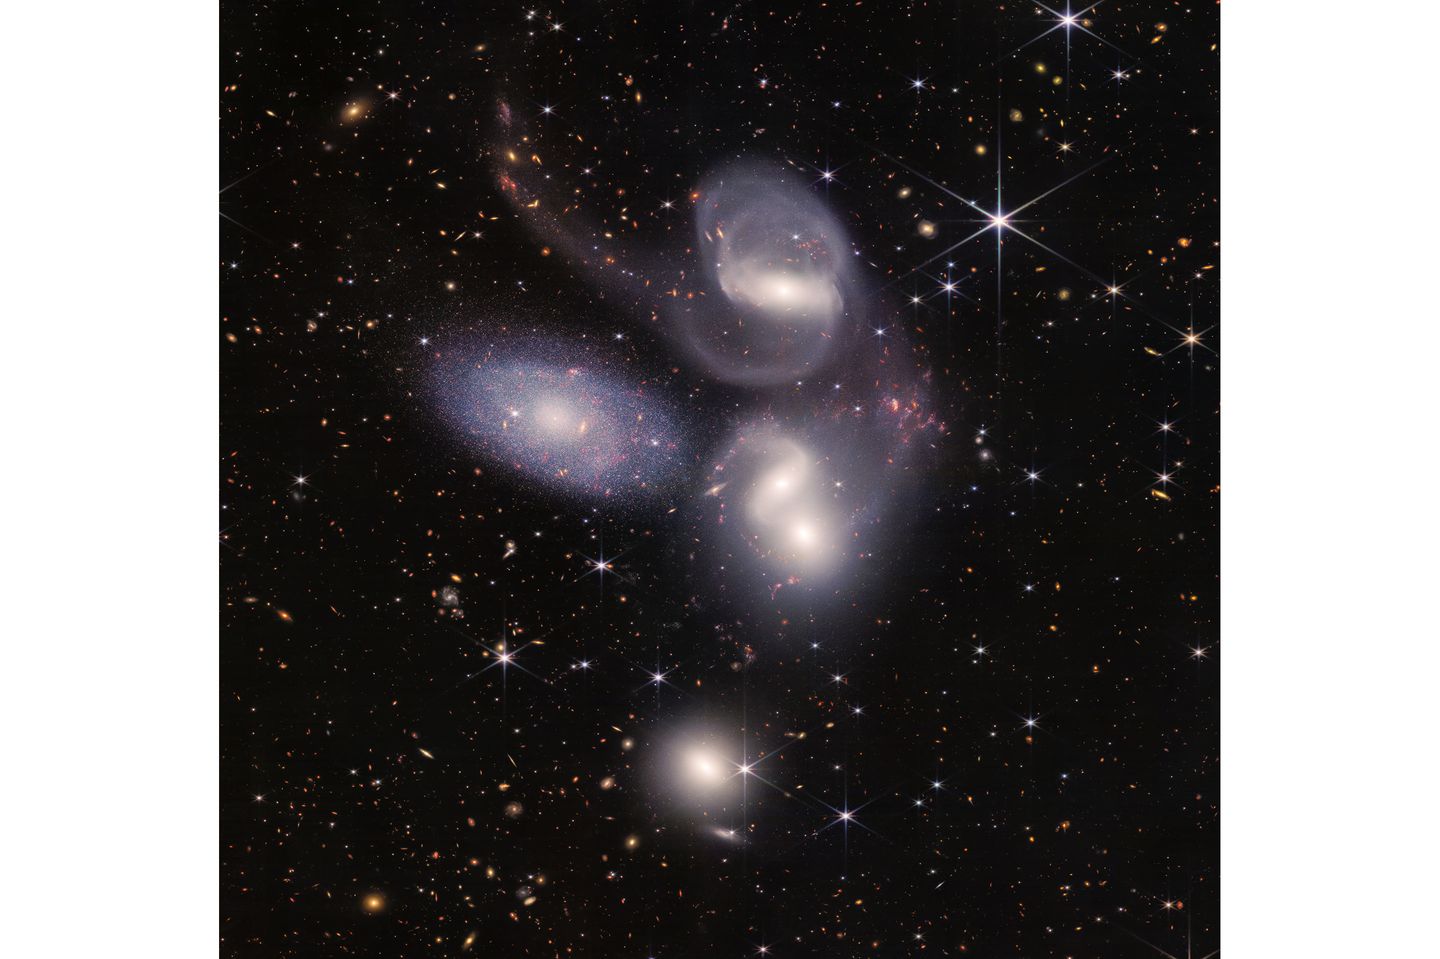 Der französische Astronom Édouard Jean-Marie Stephan entdeckte 1877 eine Gruppe von fünf Galaxien, von denen, wie sich später herausstellte, vier eng miteinander wechselwirken, quasi einen gemeinsamen Tanz aufführen (die linke Galaxie steht näher als das 290 Millionen Lichtjahre entfernte Quartett) . Die neuen Aufnahmen offenbaren Einblicke, wie Sterneninseln kollidieren und verschmelzen, wie sich etwa in der Kontaktzone Millionen neuer Sterne bilden.  In der obersten Galaxie enthüllte das Teleskop ein supermassives Schwarzes Loch, das so hell strahlt wie 40 Milliarden Sonnen